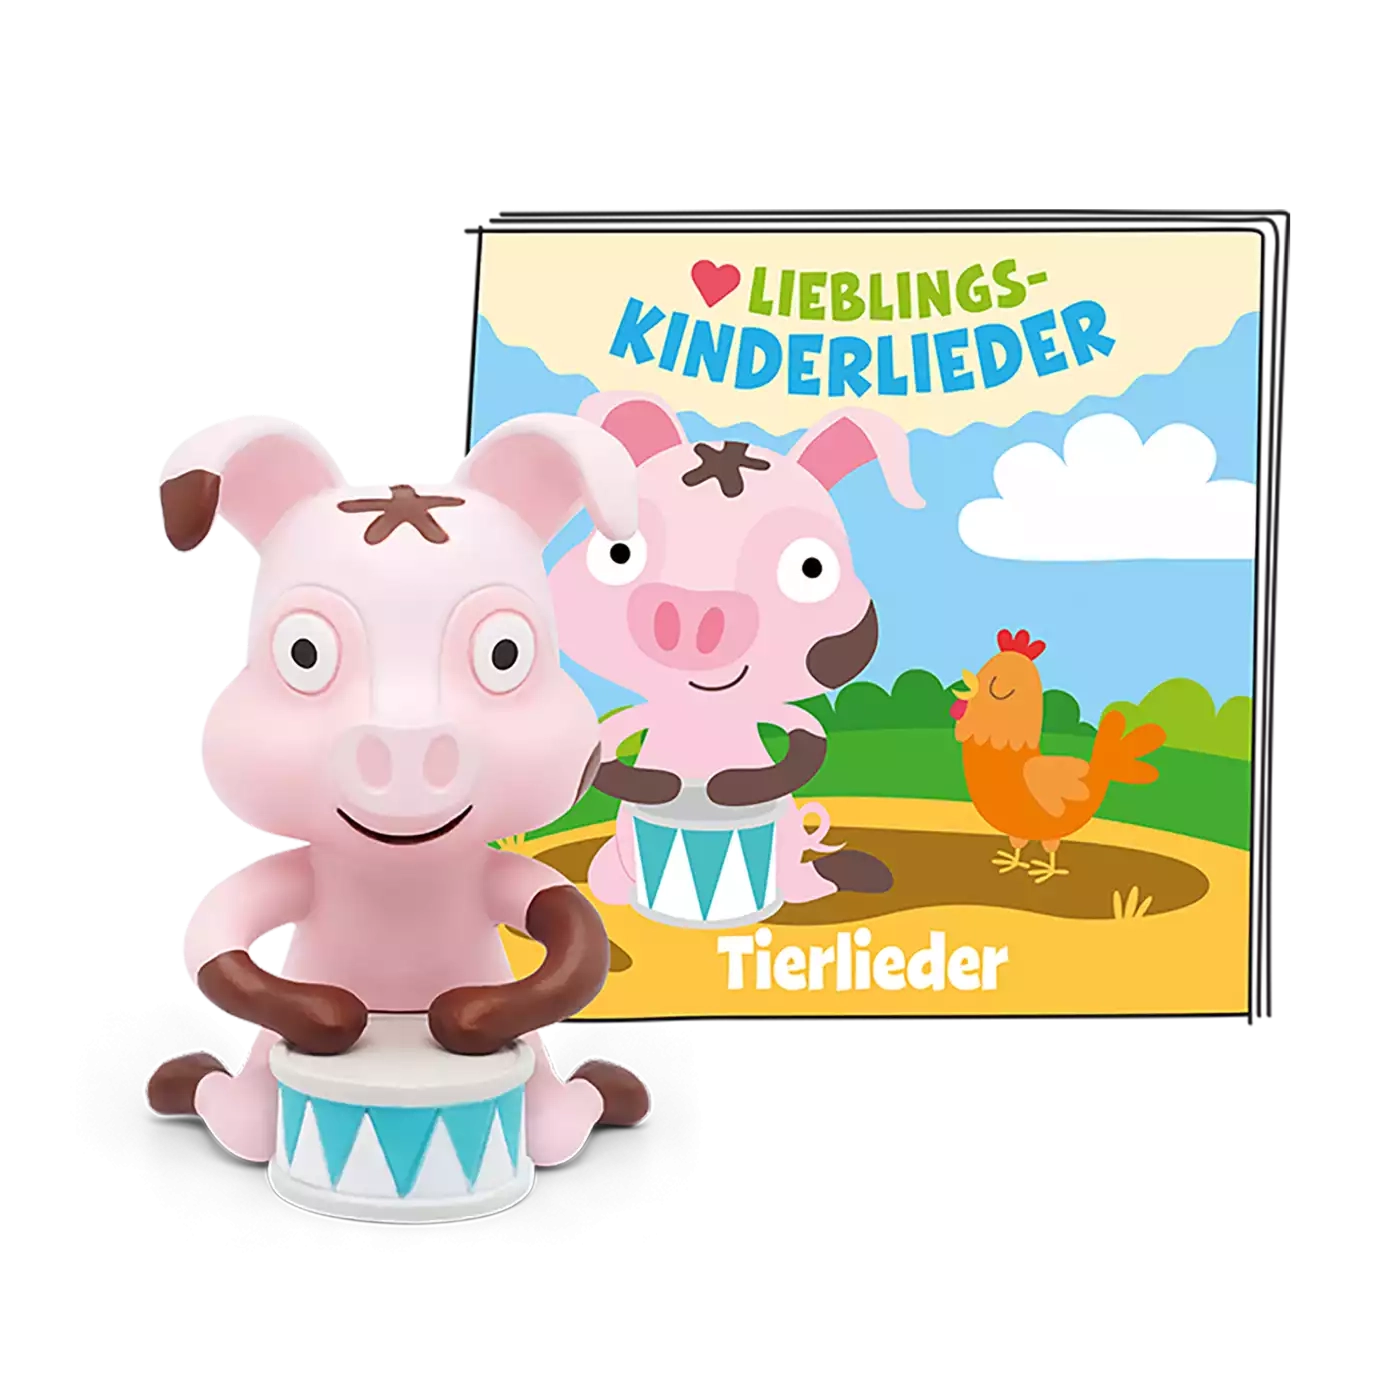 Lieblings-Kinderlieder - Tierlieder (Neuauflage) tonies 2000581835907 3